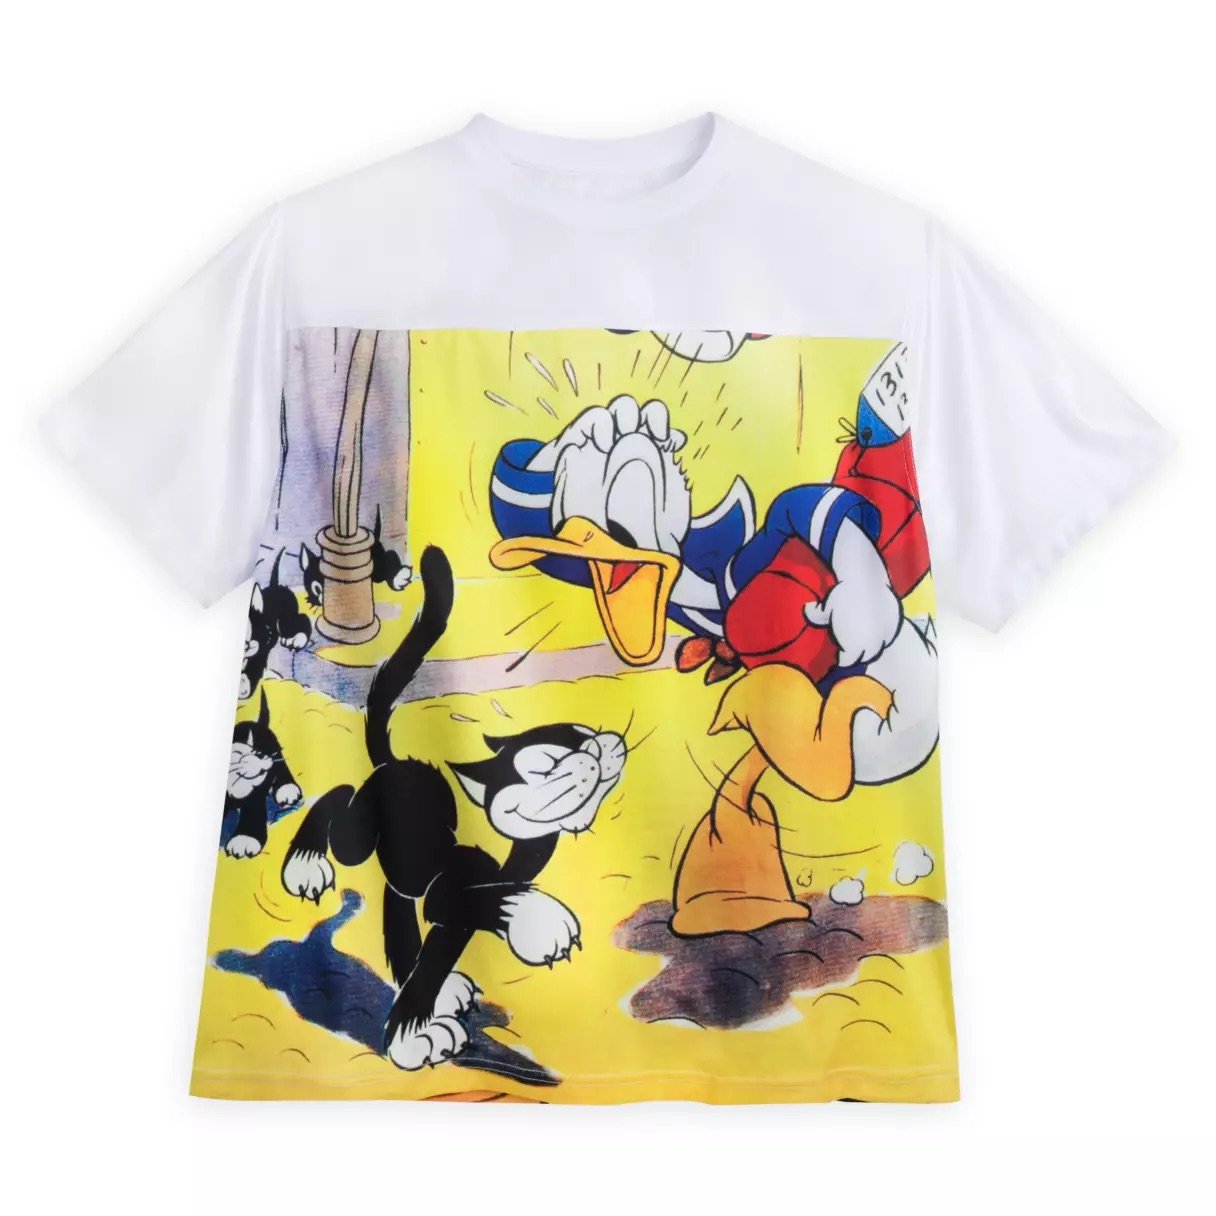 Disney Daisy Duck T-Shirt for Women - Official shopDisney